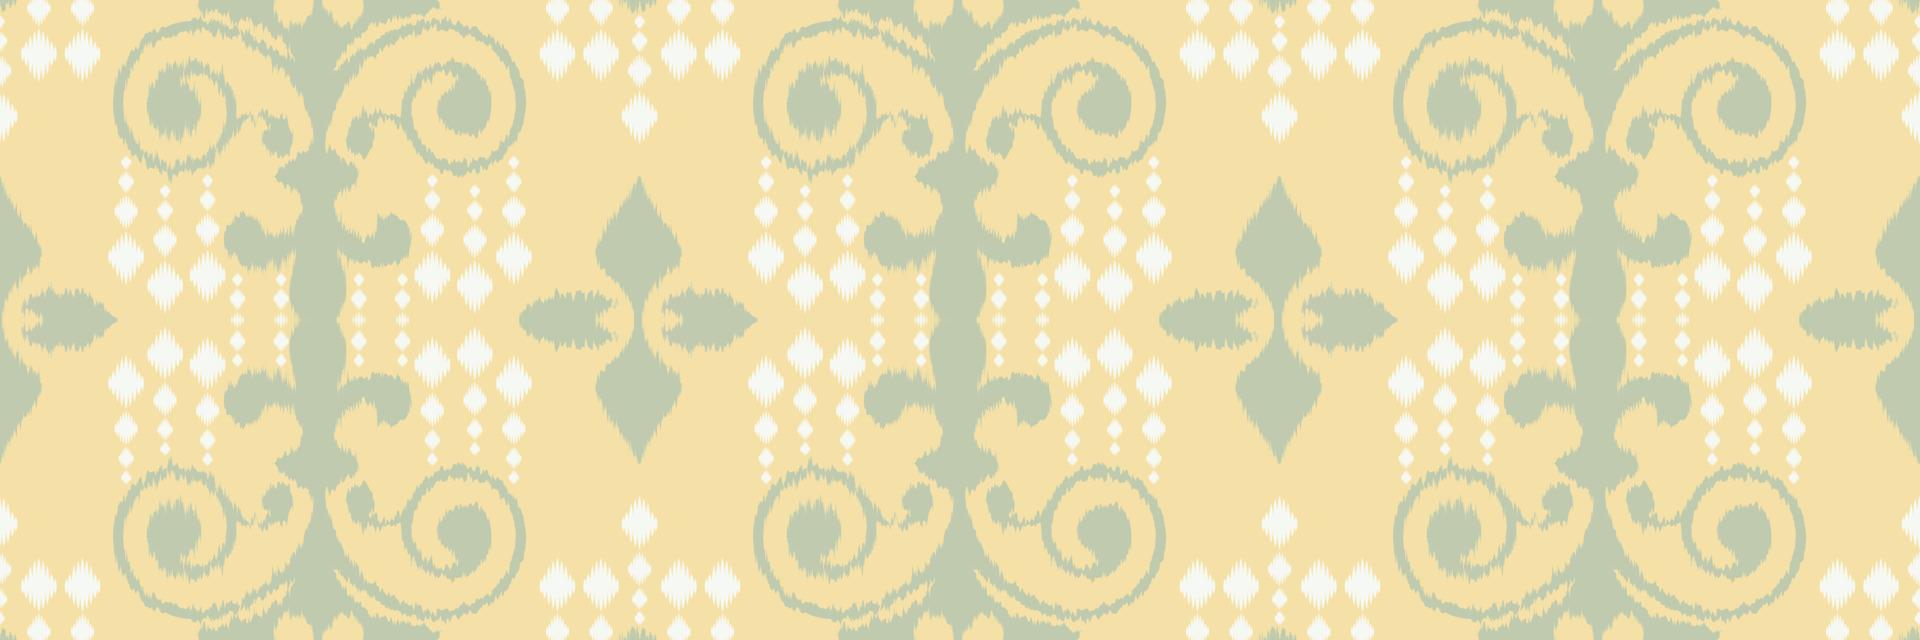 ikat fiore batik tessile senza soluzione di continuità modello digitale vettore design per Stampa saree Kurti Borneo tessuto confine spazzola simboli campioni festa indossare